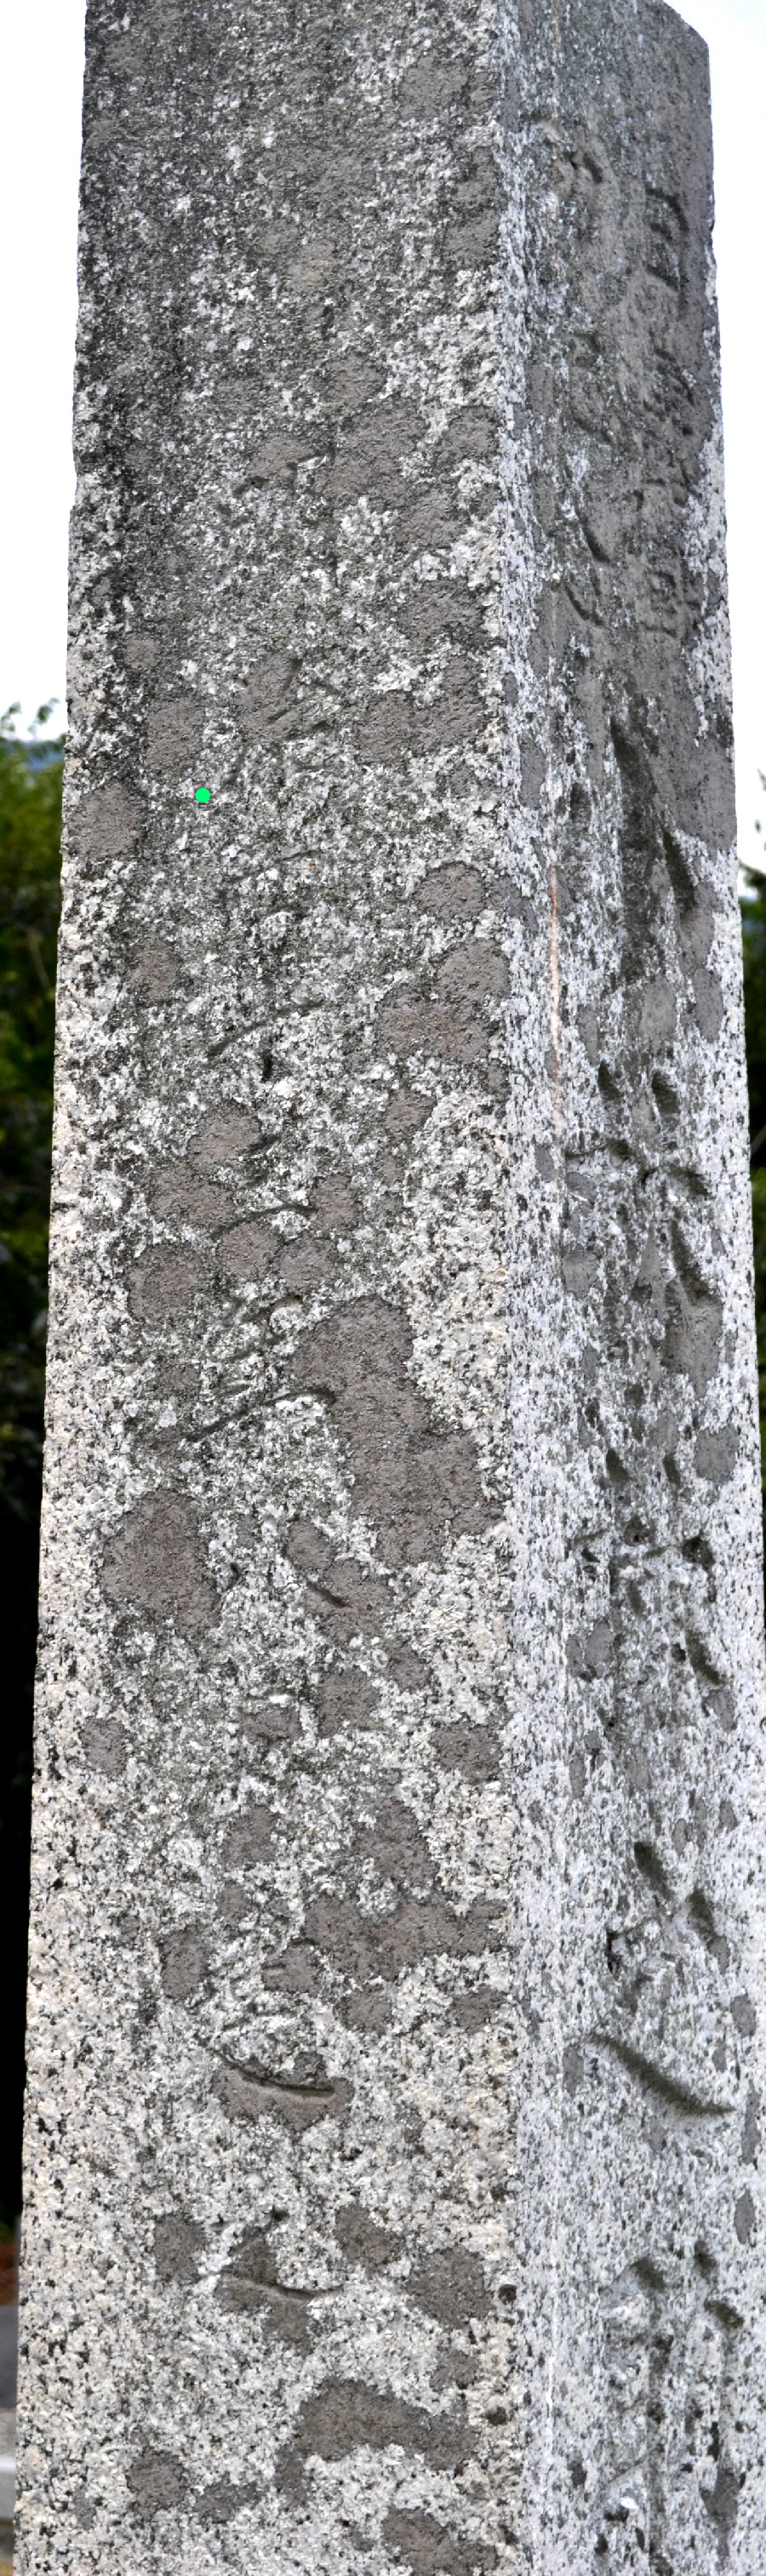 「日露戦功紀念小林林之助塔」の左側面